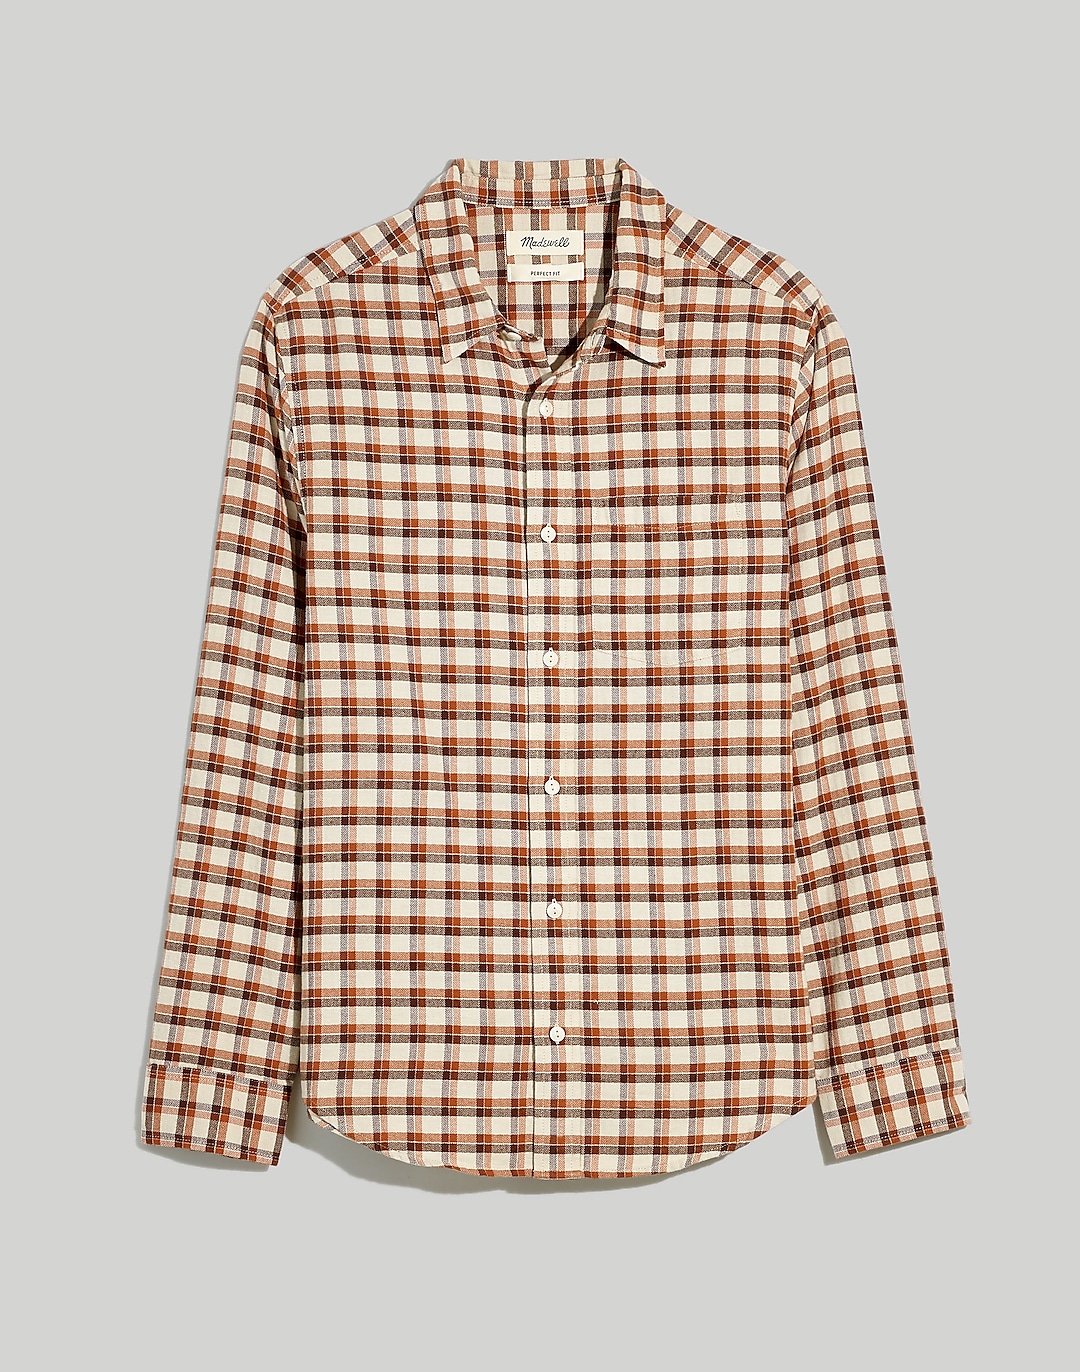 Perfect Long-Sleeve Shirt in Herringbone Plaid | Madewell